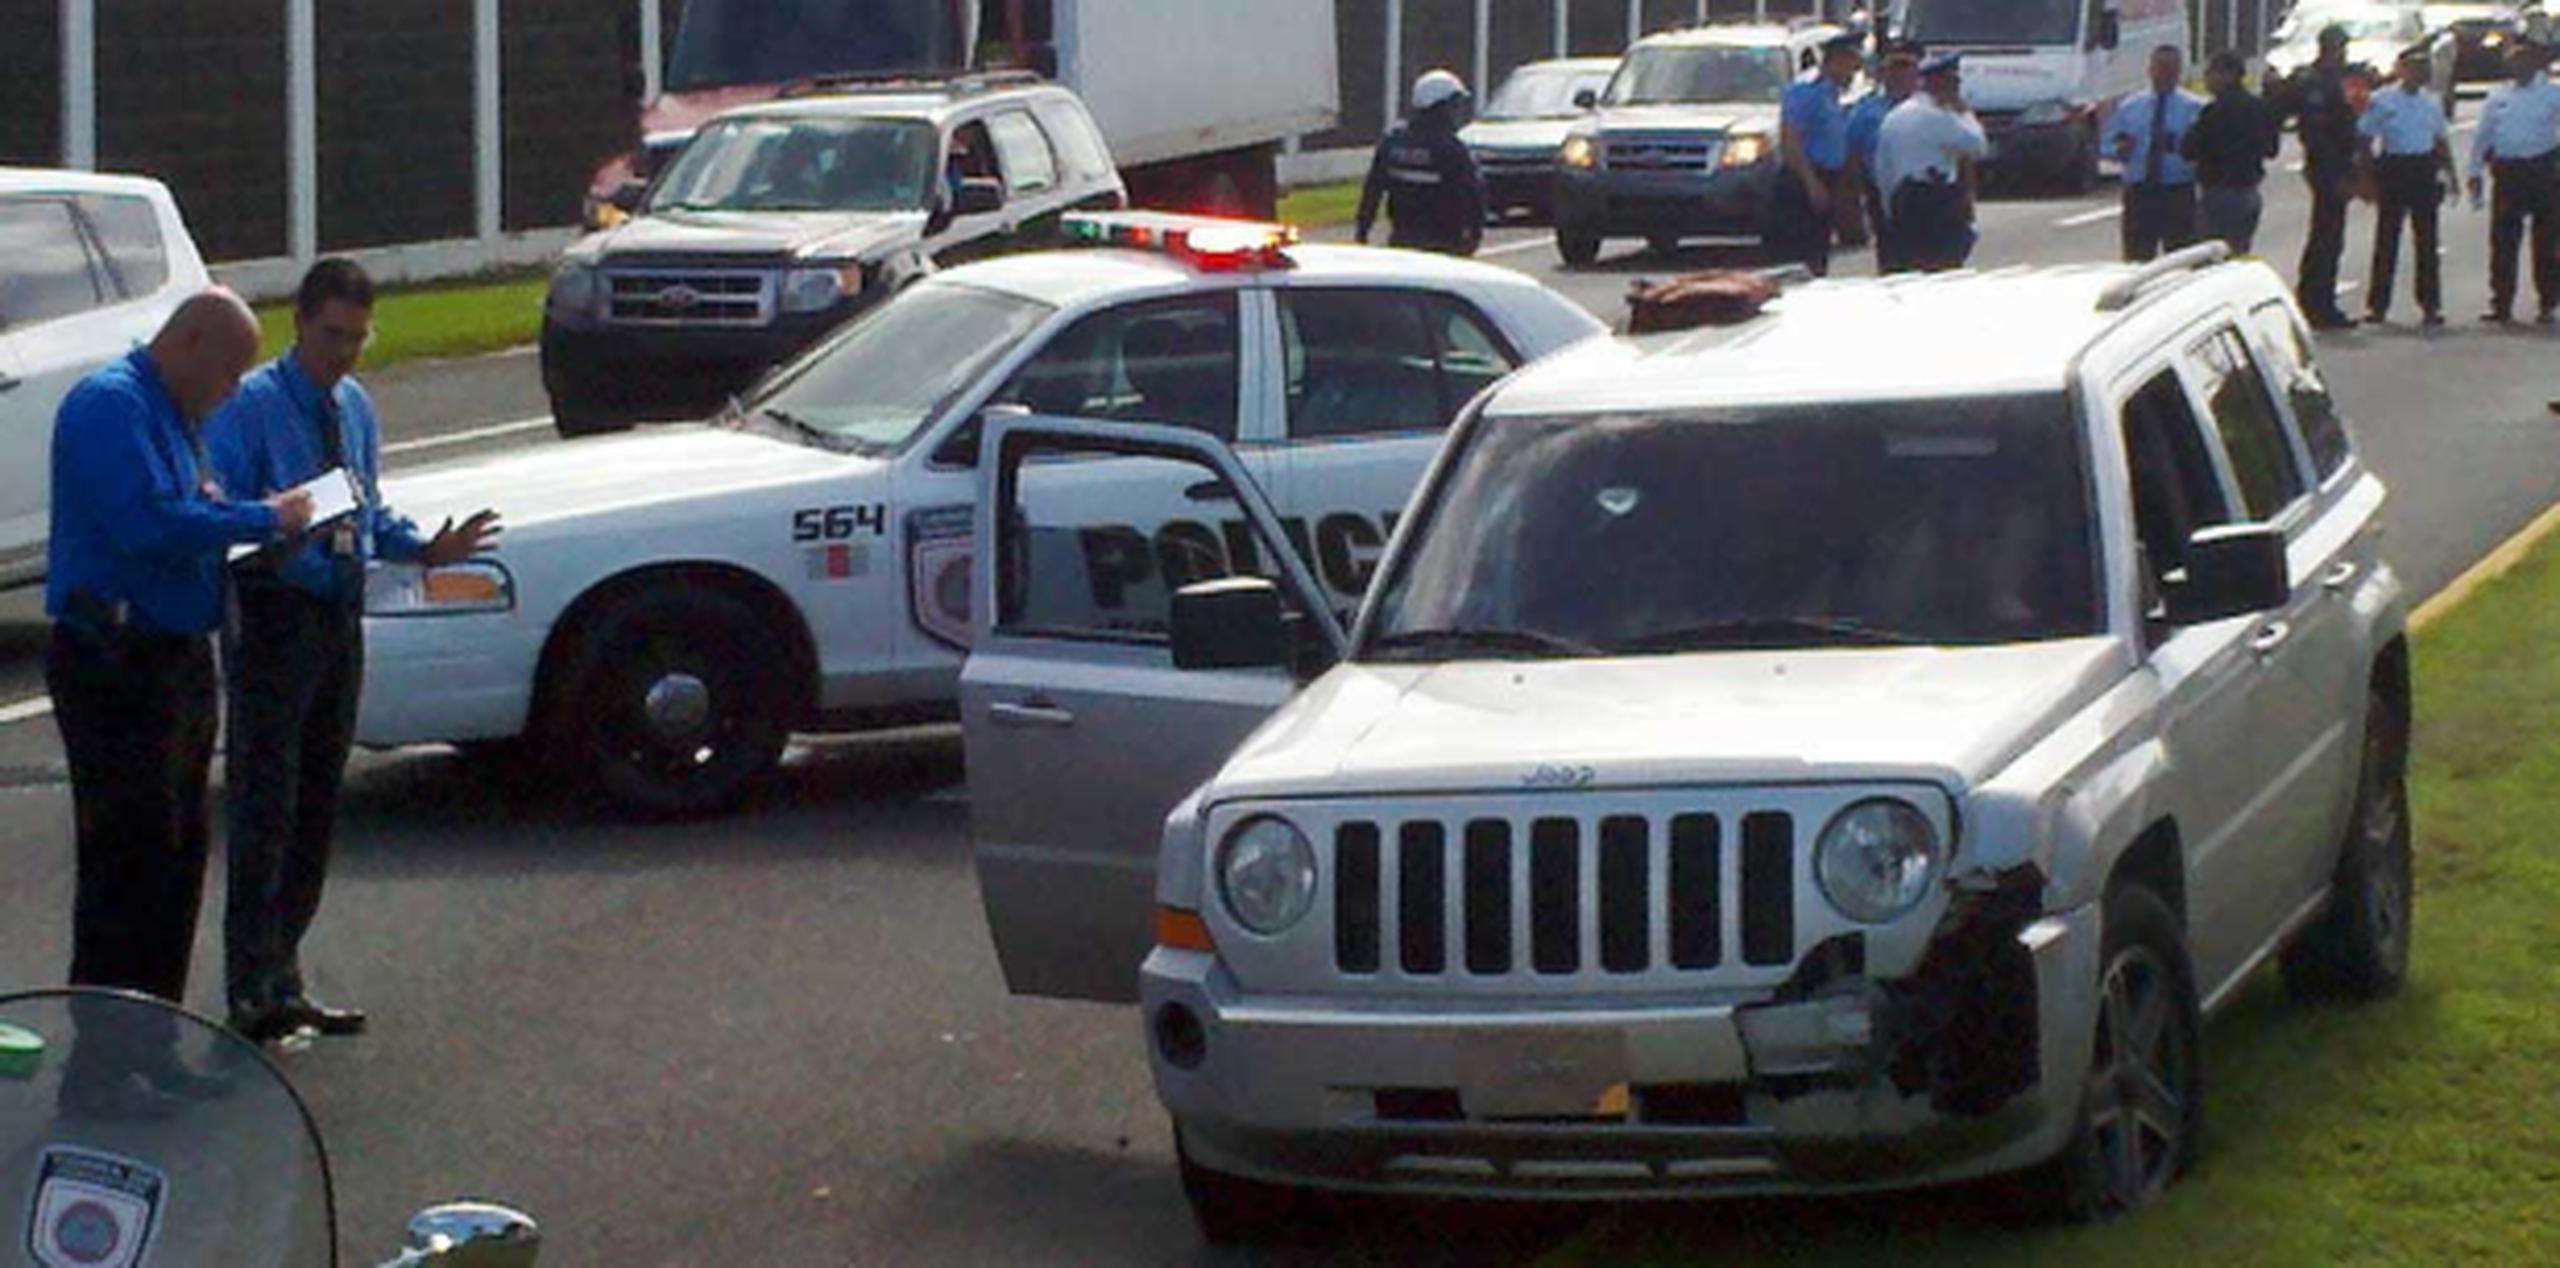 Al verse perseguido por la Policía, el conductor, que fue identificado como Aníbal Robles Vega, de 24 años; detuvo la guagua Jeep Patriot color gris a la altura del kilómetro 14.3 e intentó irse a la fuga, pero fue detenido. (Héctor R. Santos/Para GFR Media)